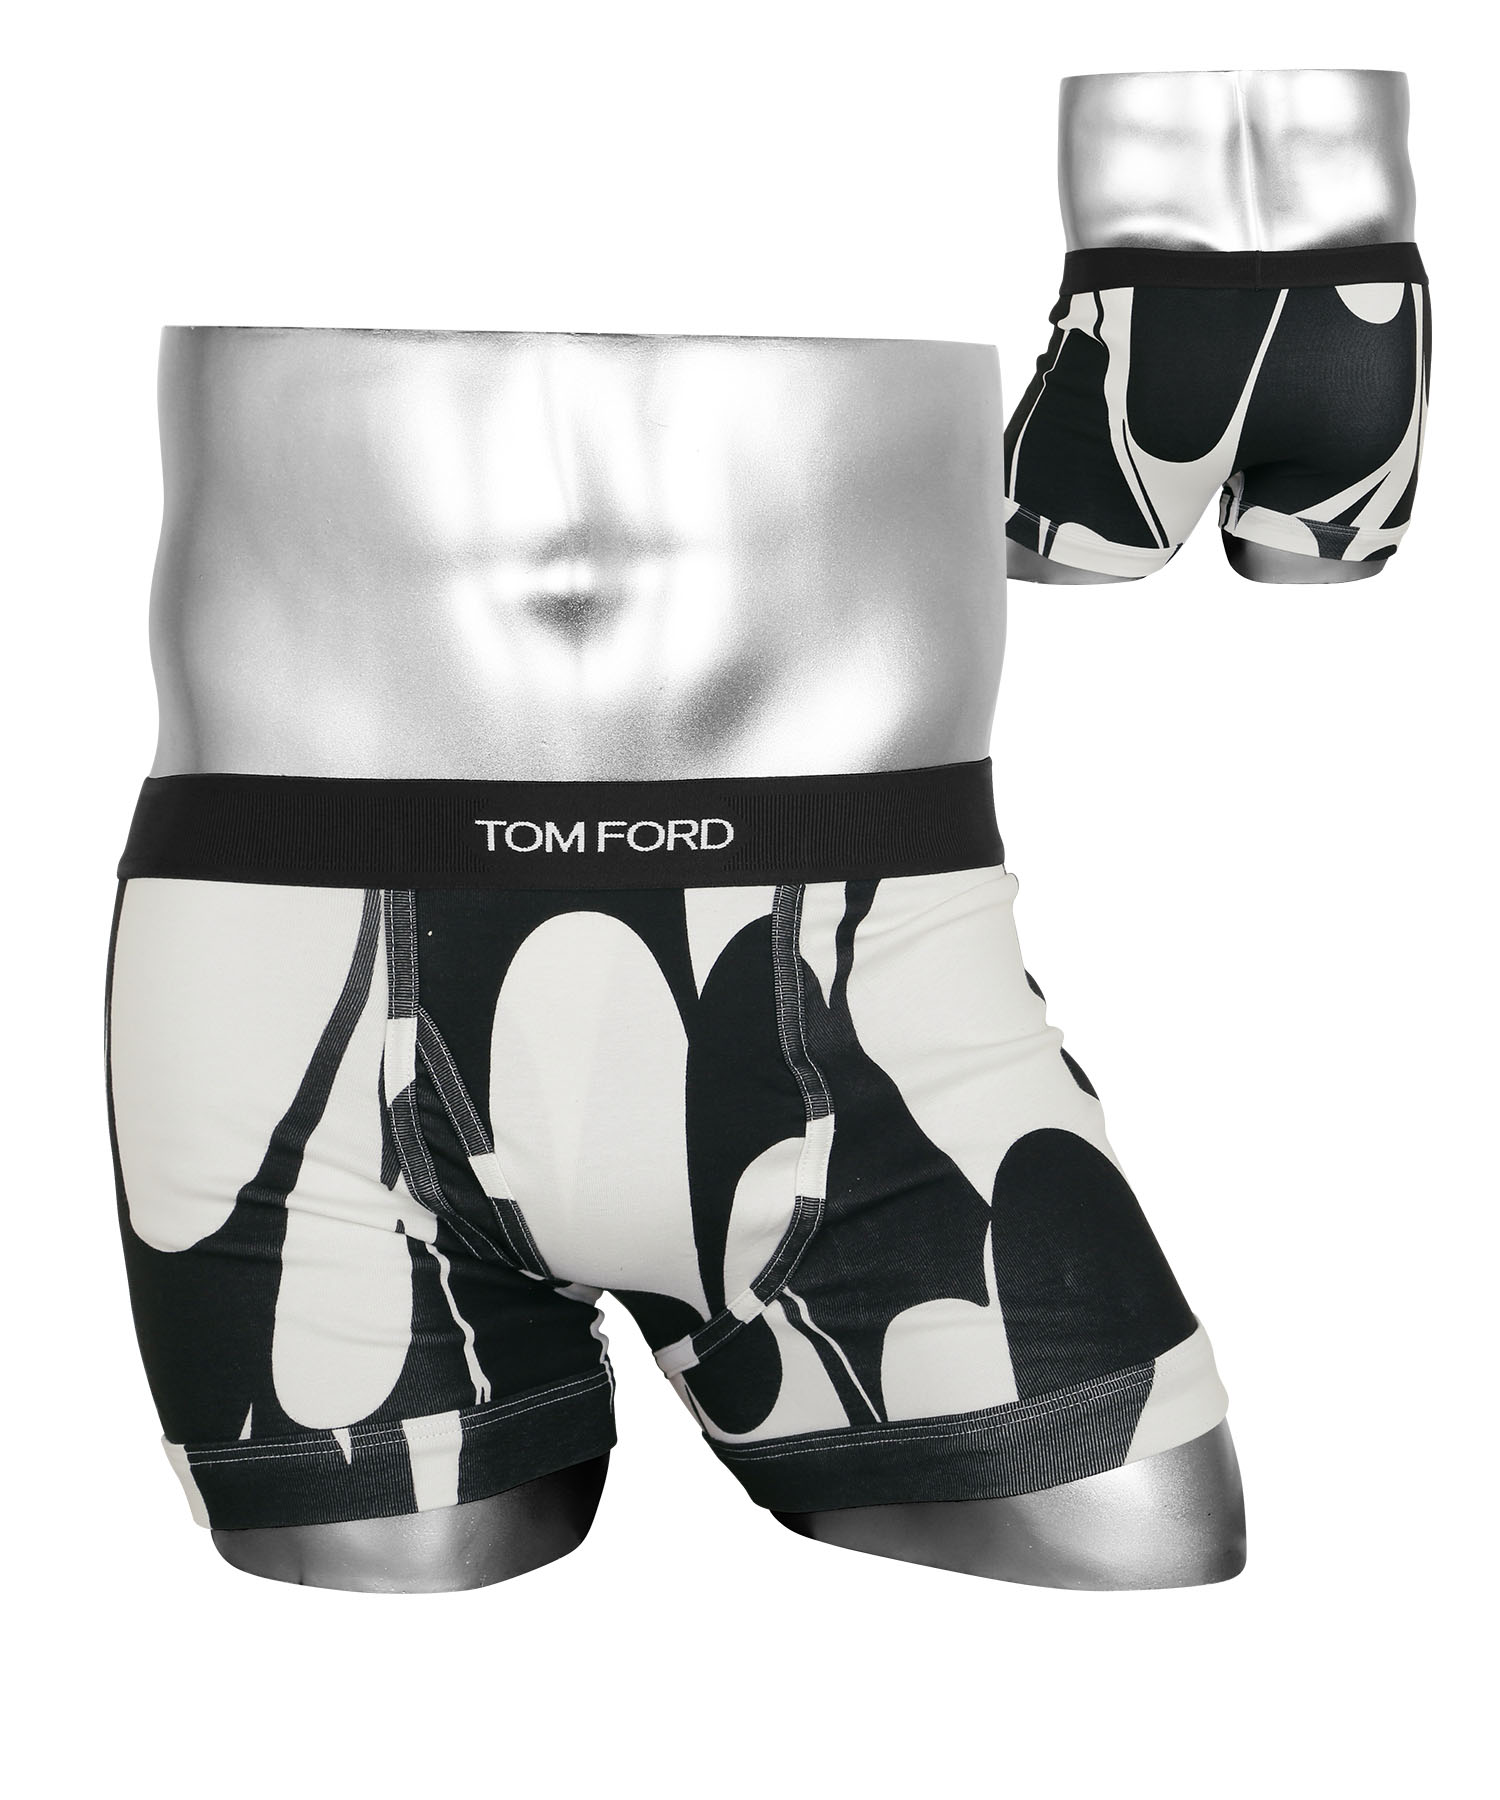 トムフォード TOM FORD ボクサーパンツ メンズ アンダーウェア 綿混 コットン 前開き ロゴ 高級 ハイブランド プレゼント ギフト